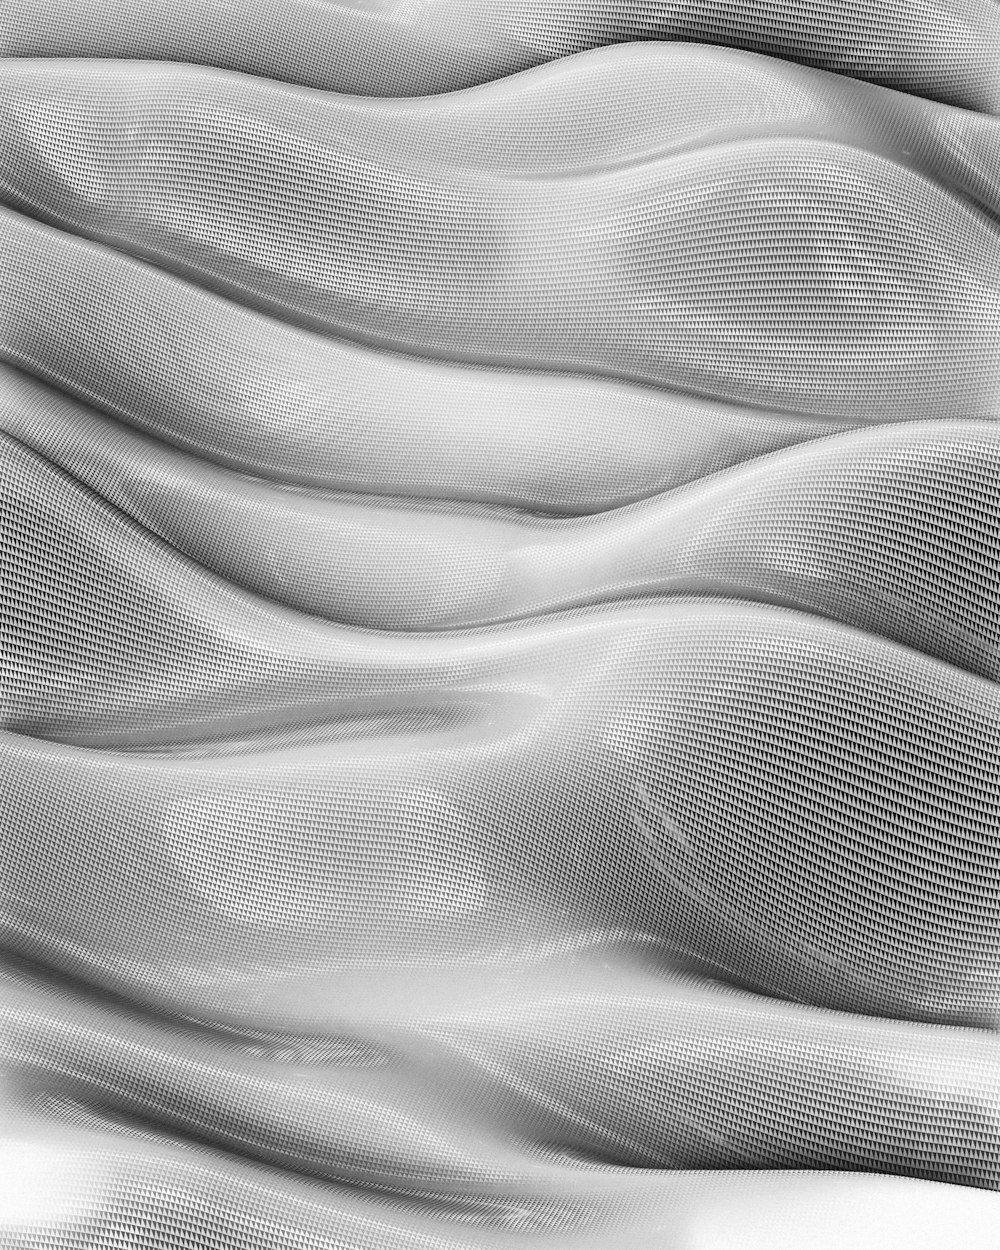 Una foto en blanco y negro de una superficie ondulada